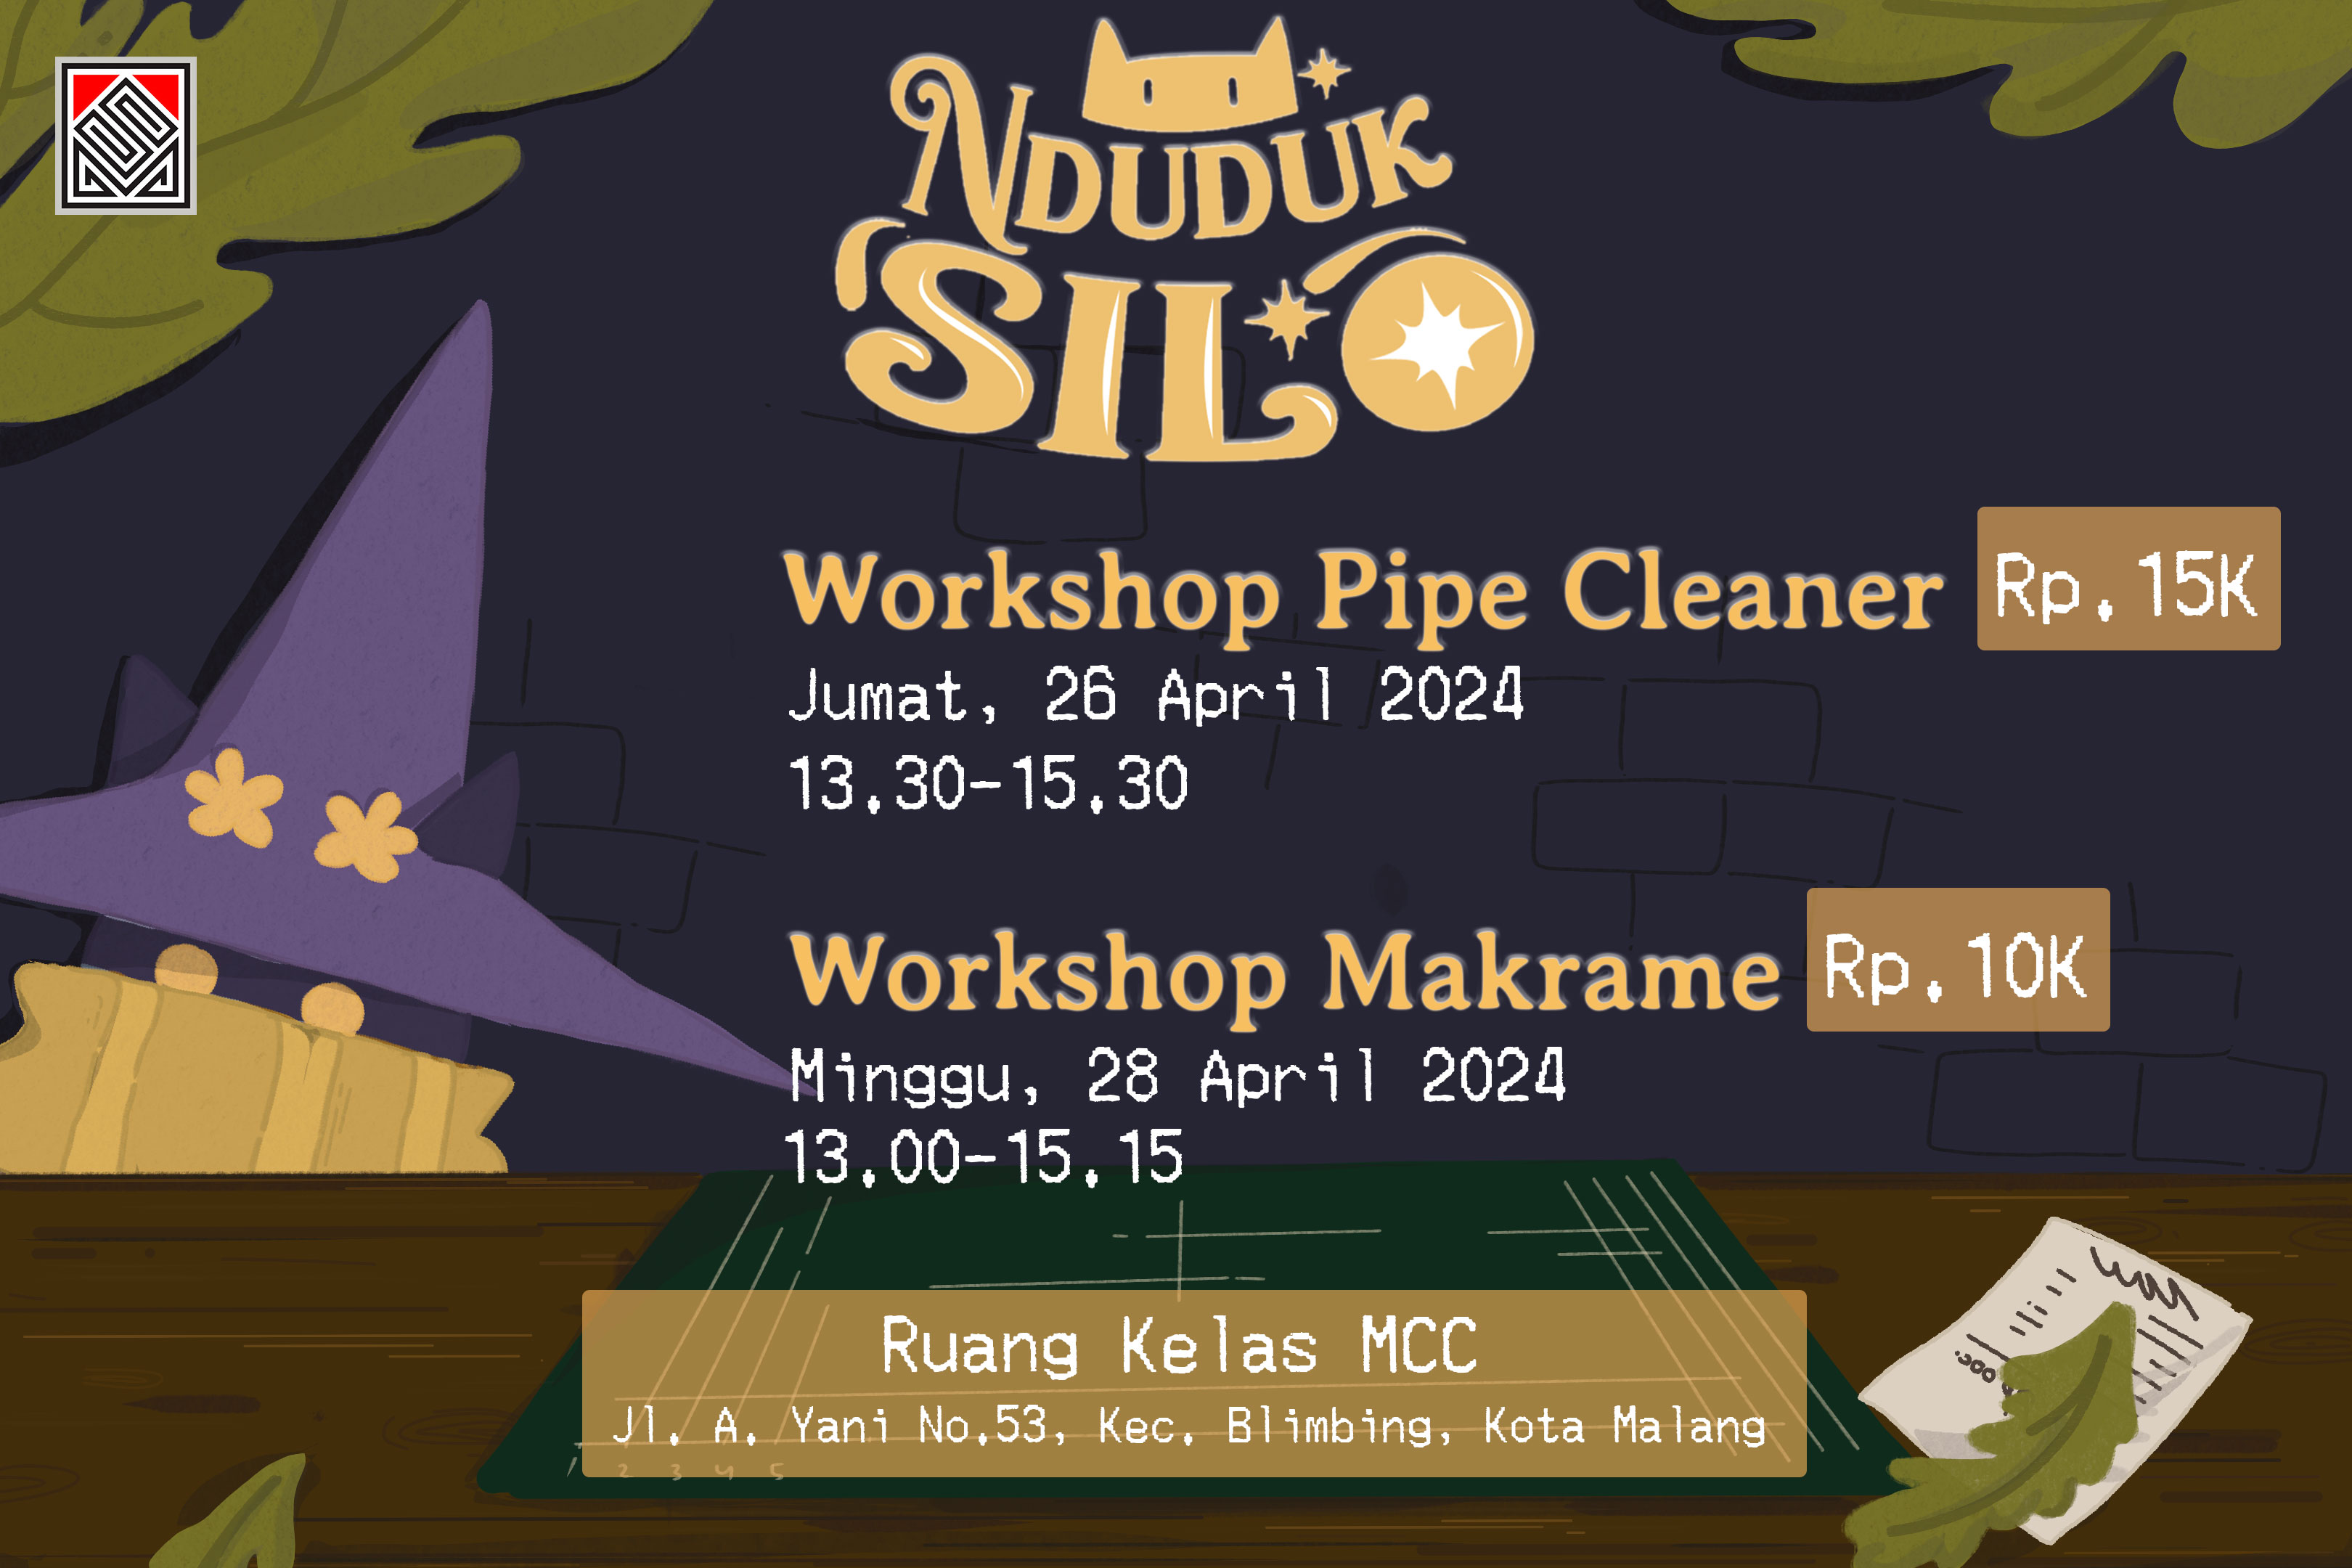 Workshop pipe cleaner, sub acara pameran NDUDUK SILO 